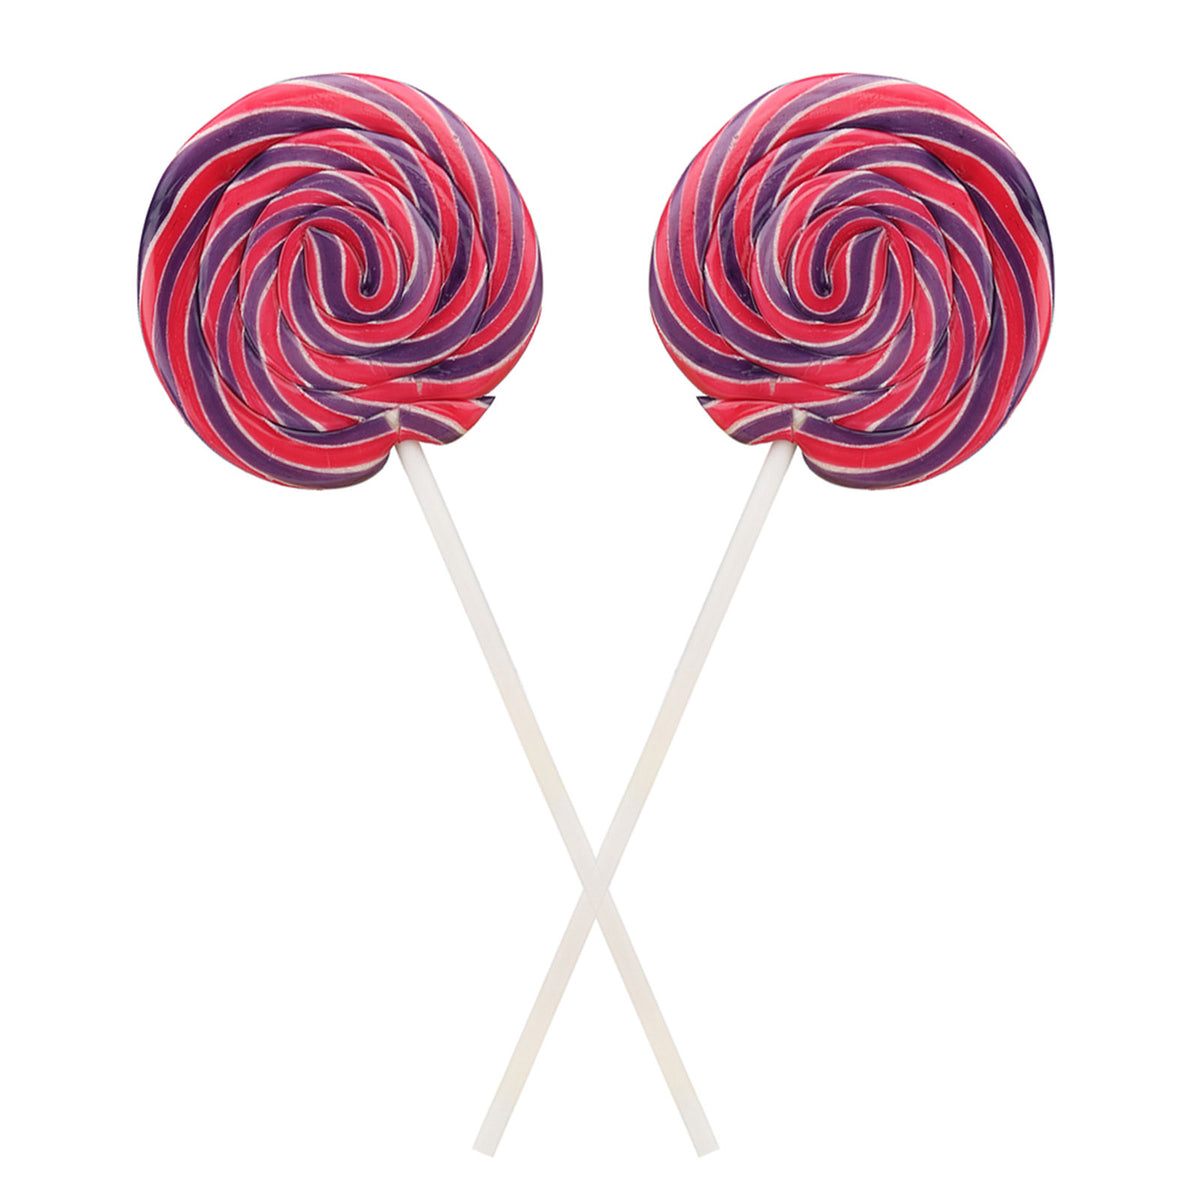 Passion Fruit Lollipop 55gm